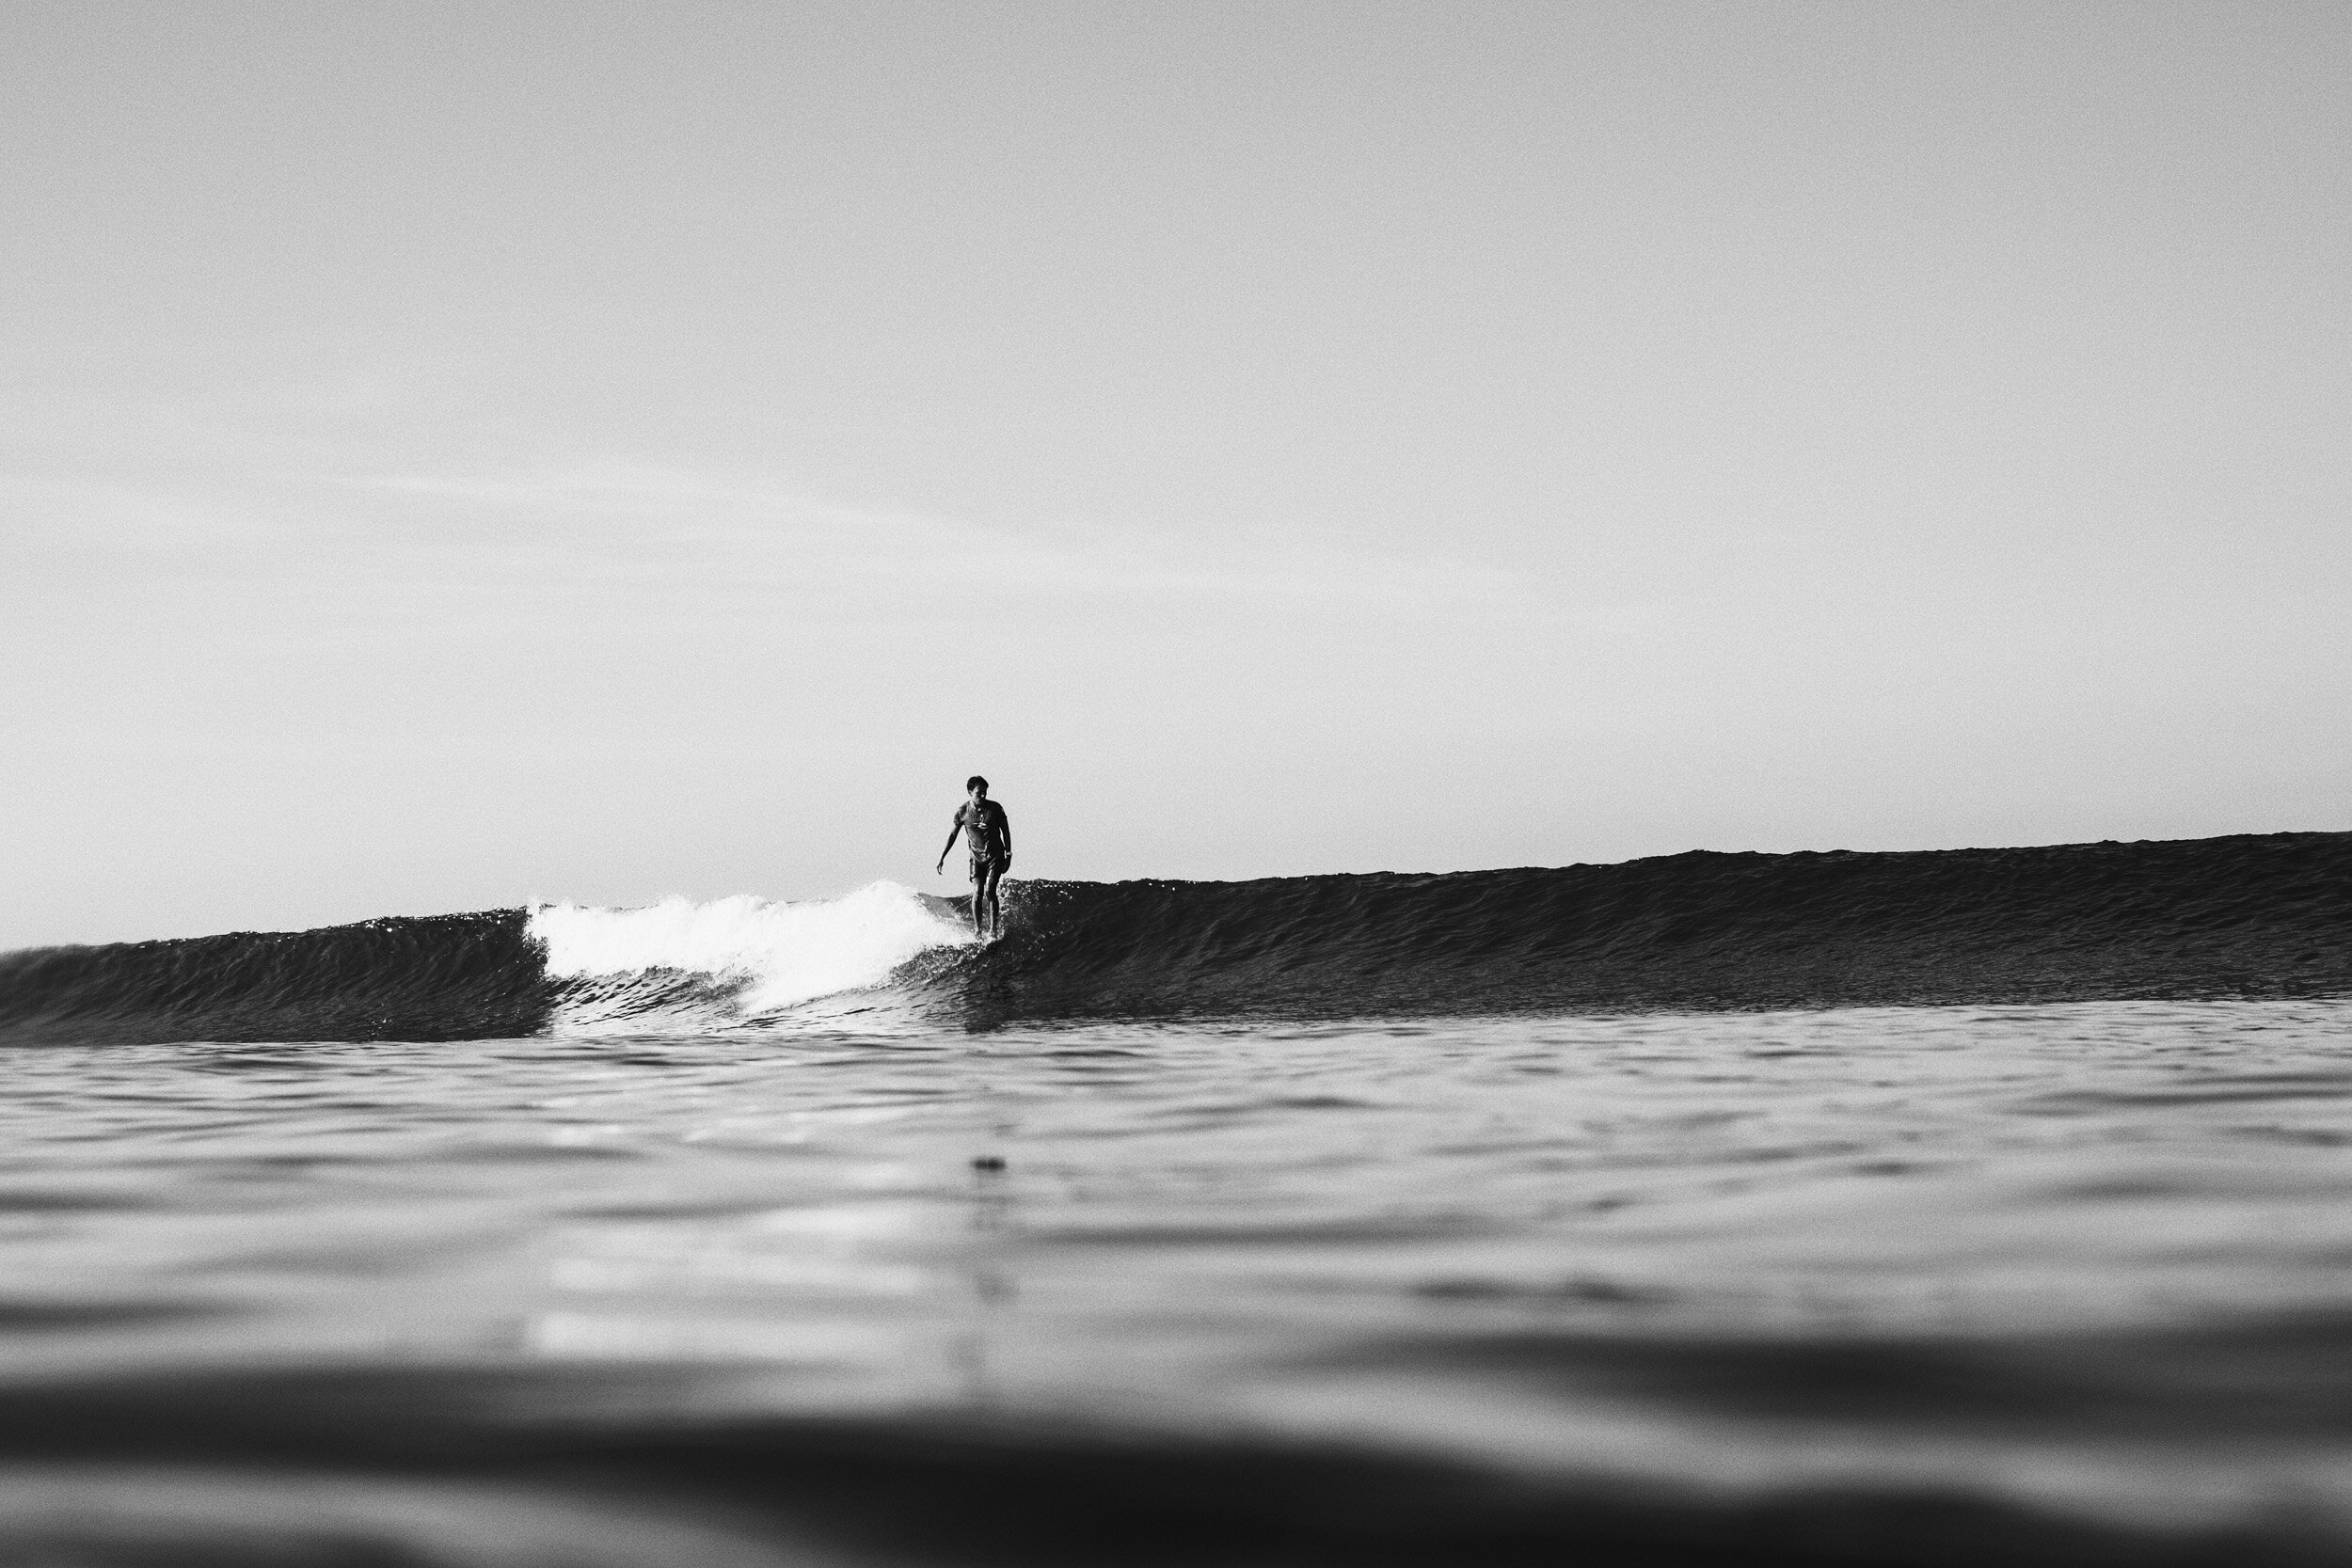 la-saladita-mexico-surf-longboard-fotografia-heiko-bothe-9607.jpg